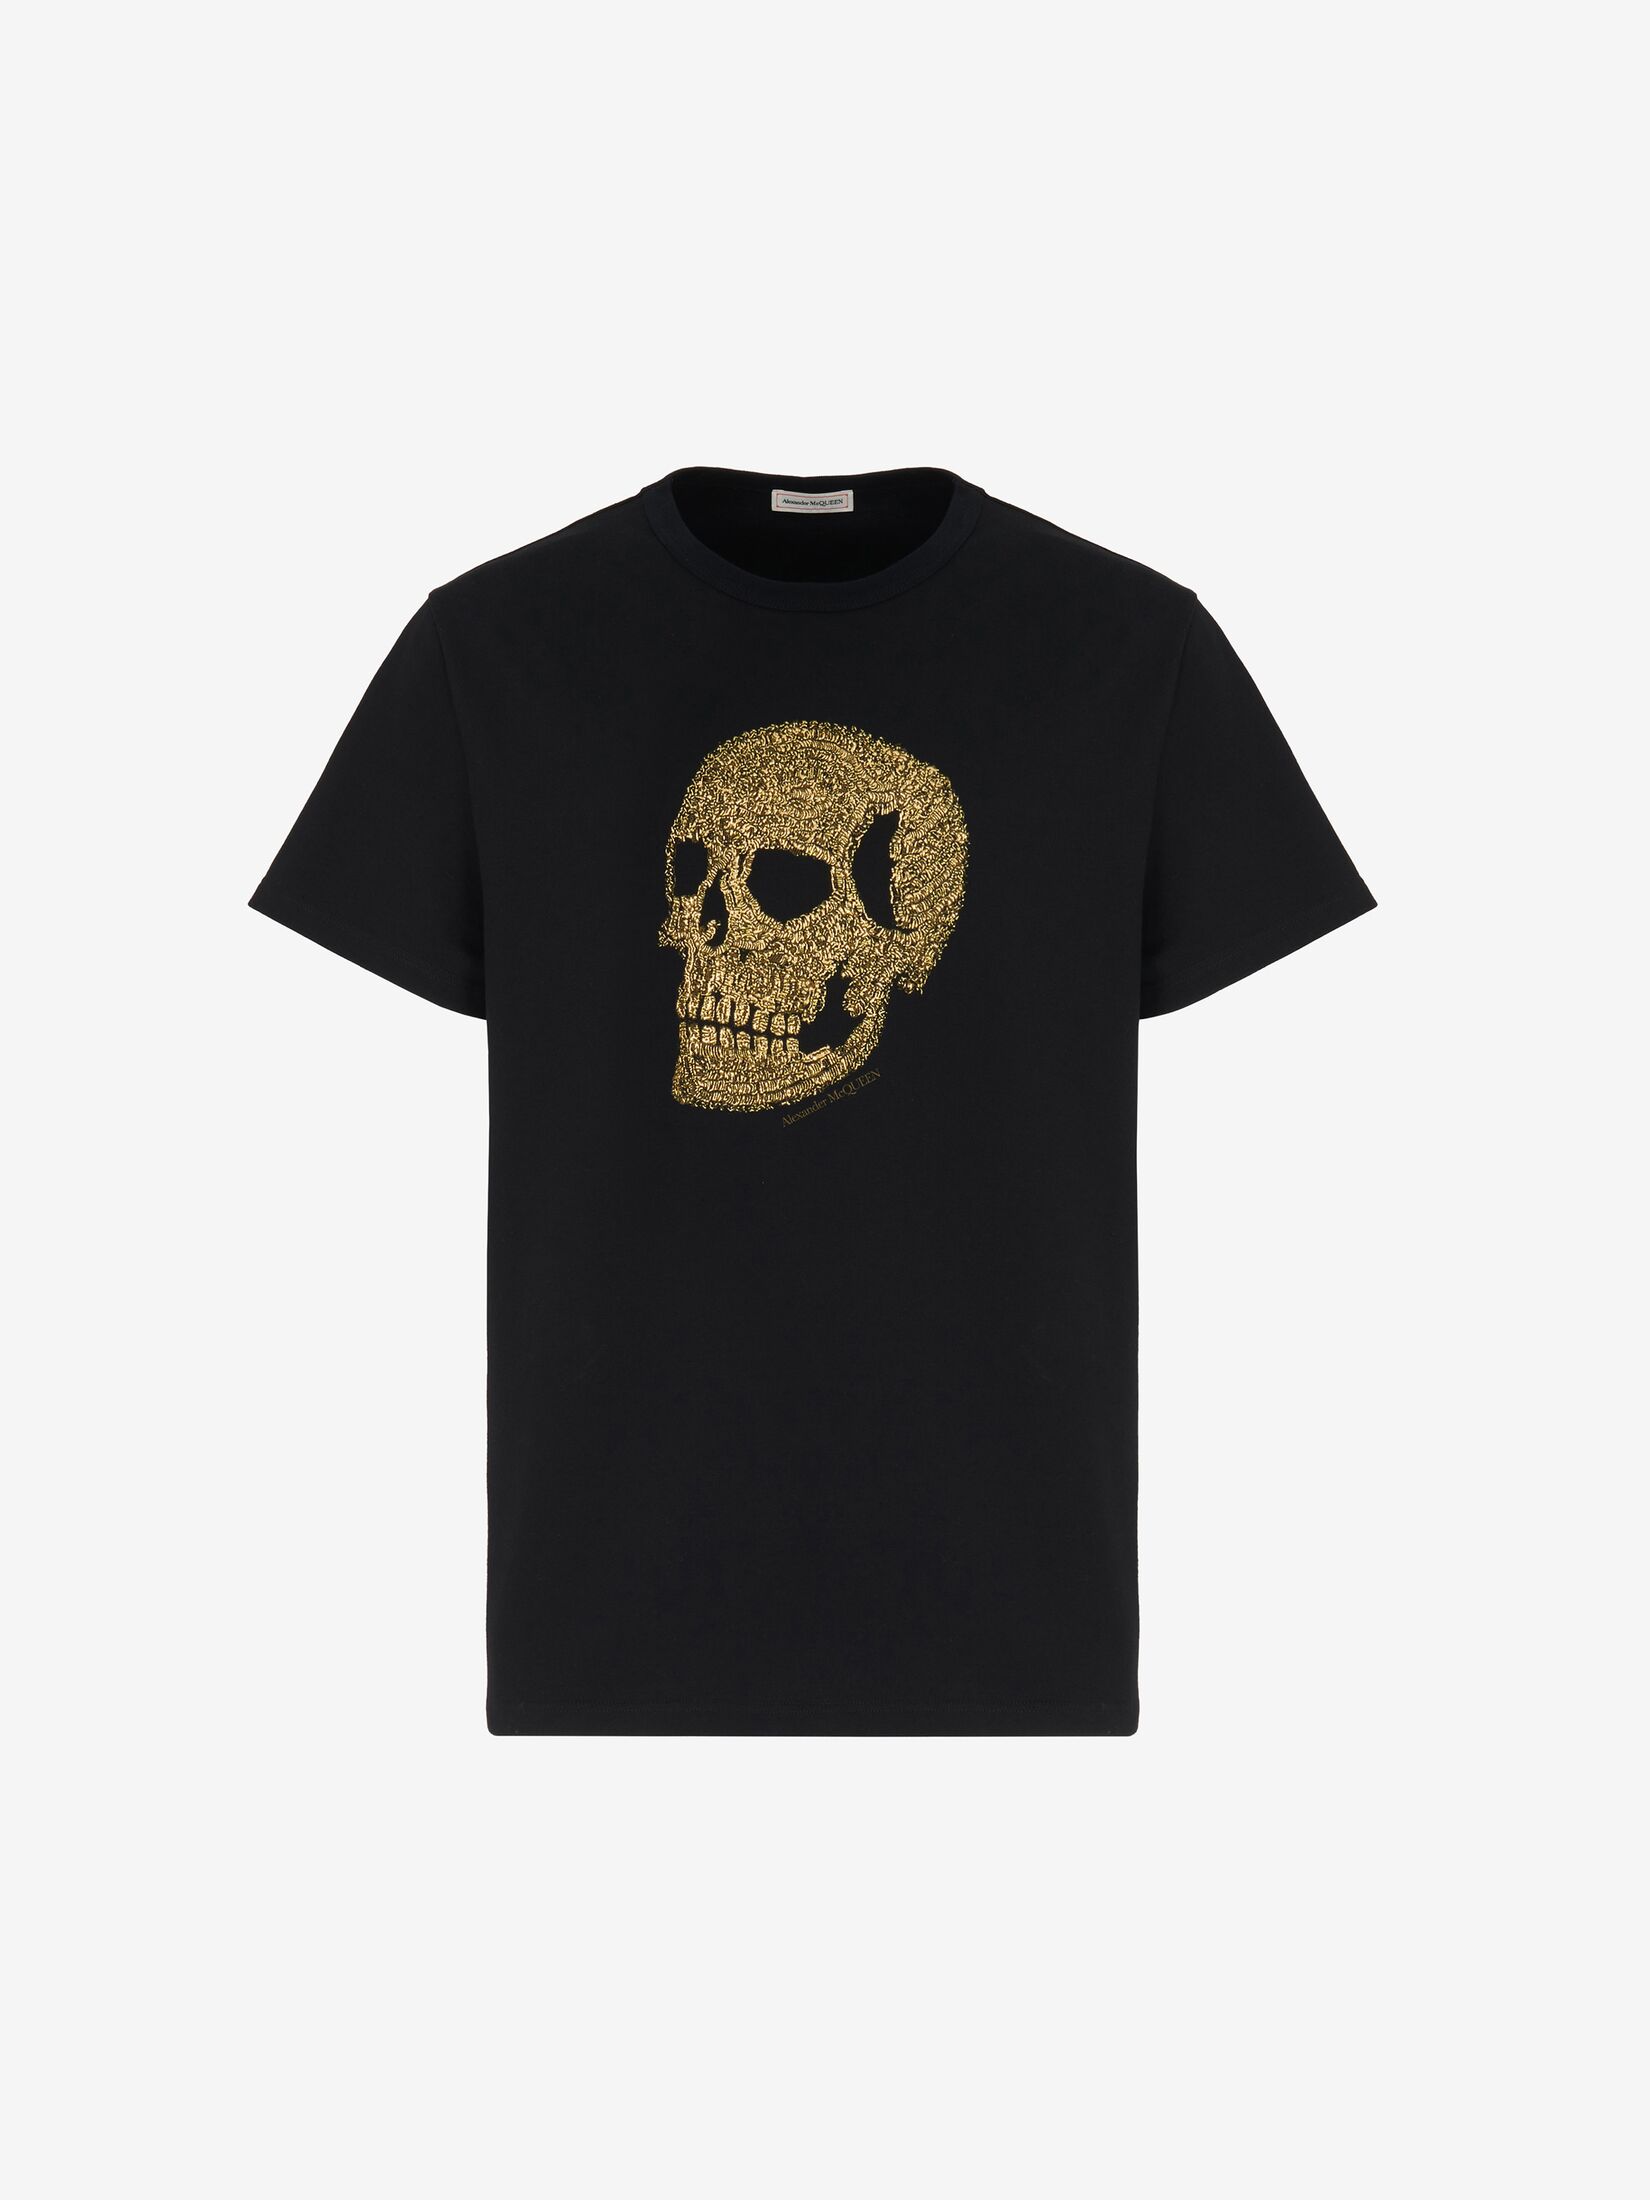 Skull T-shirt in Black/ Gold | Alexander McQueen US